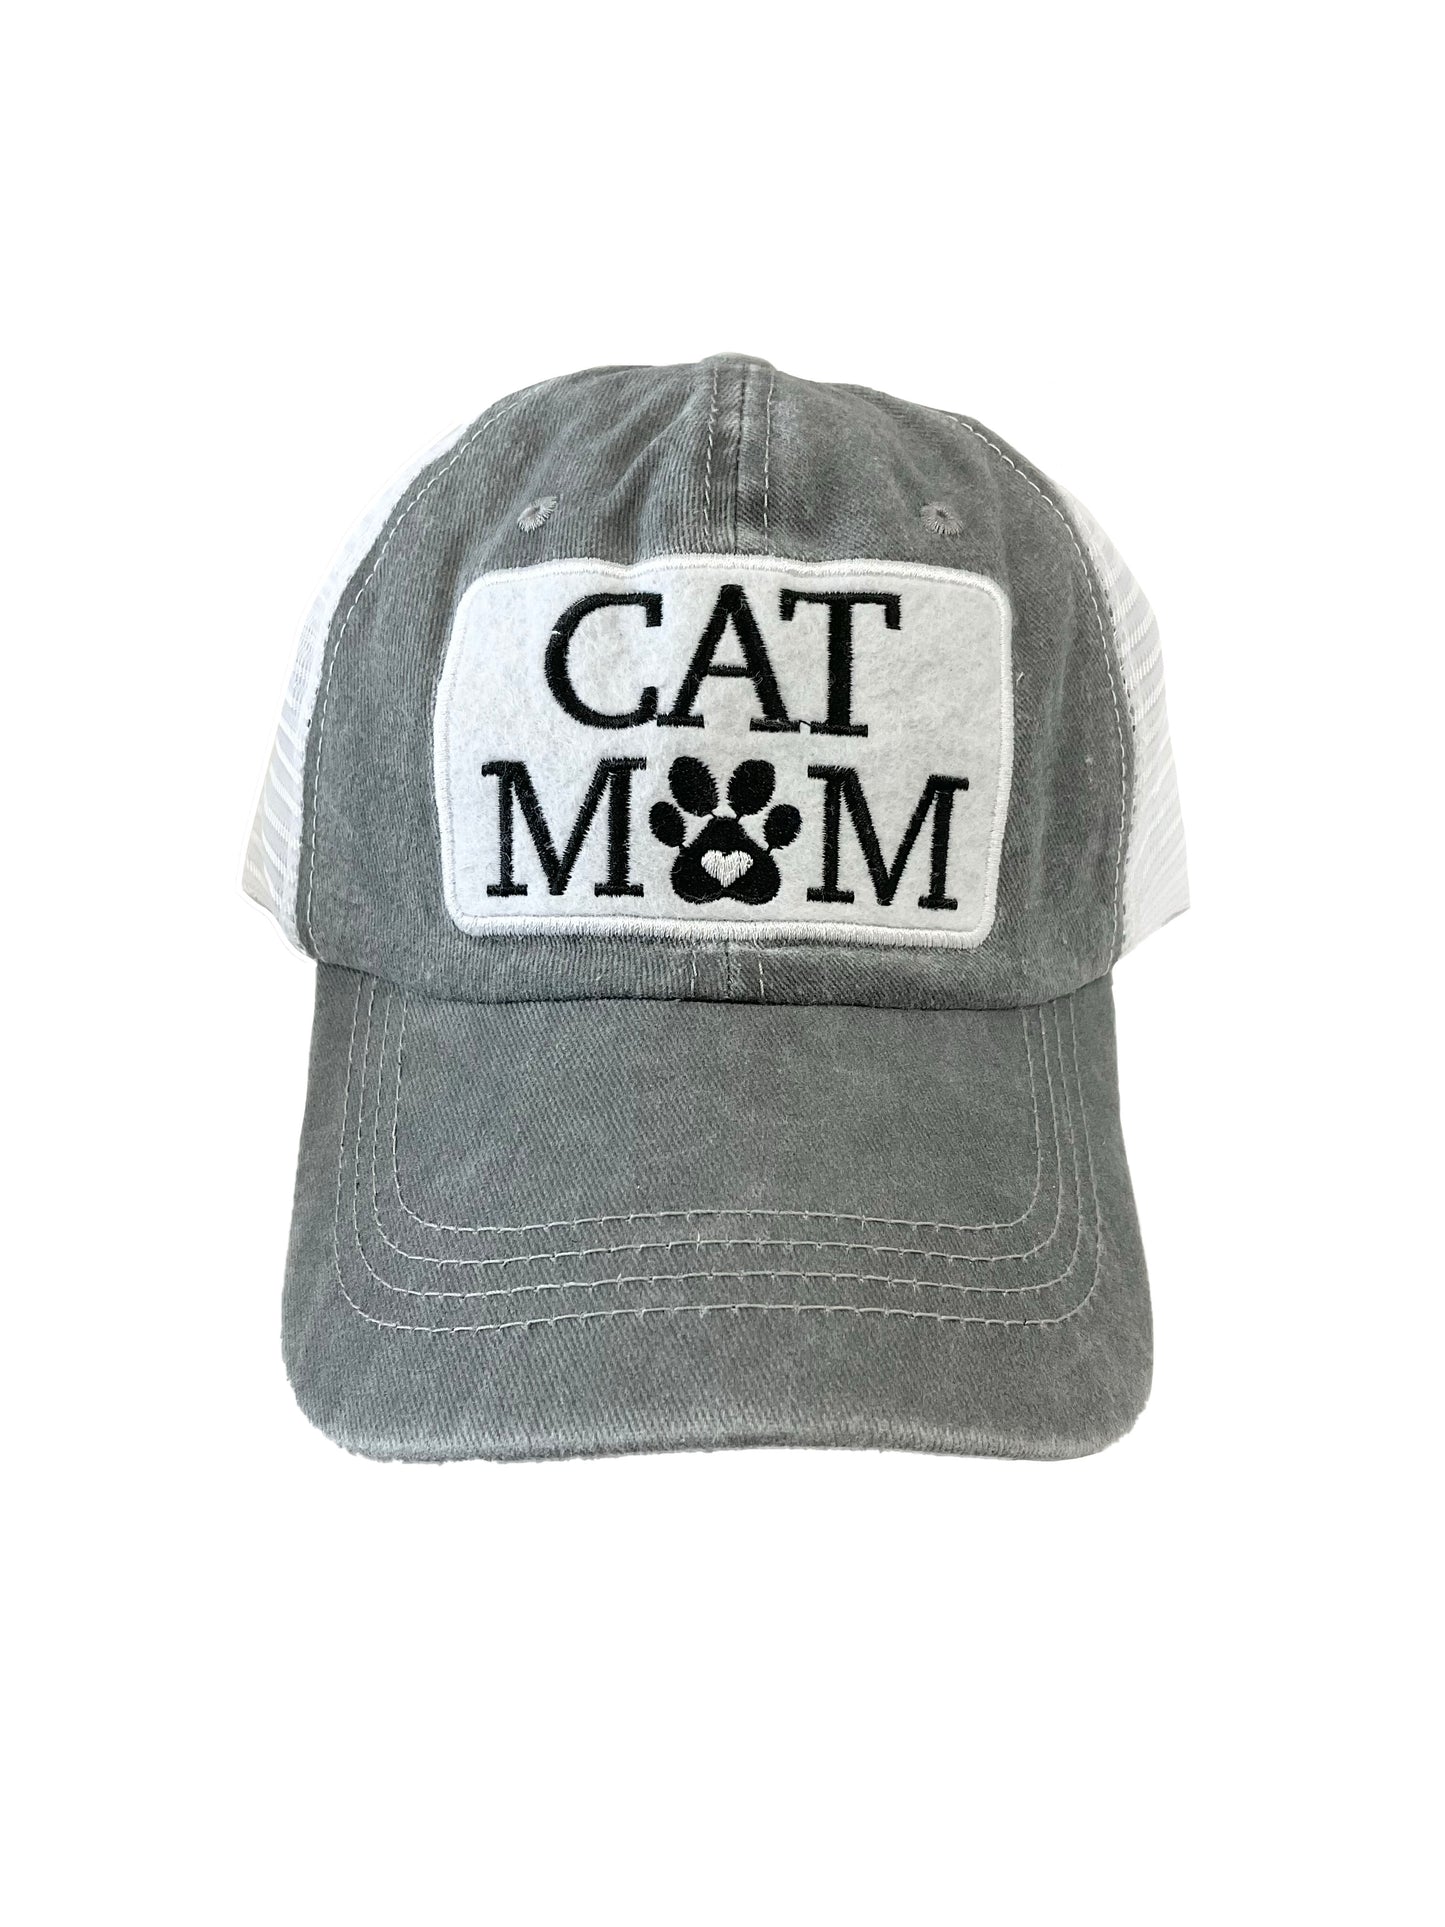 Cat Mom Cap #22-5685GY